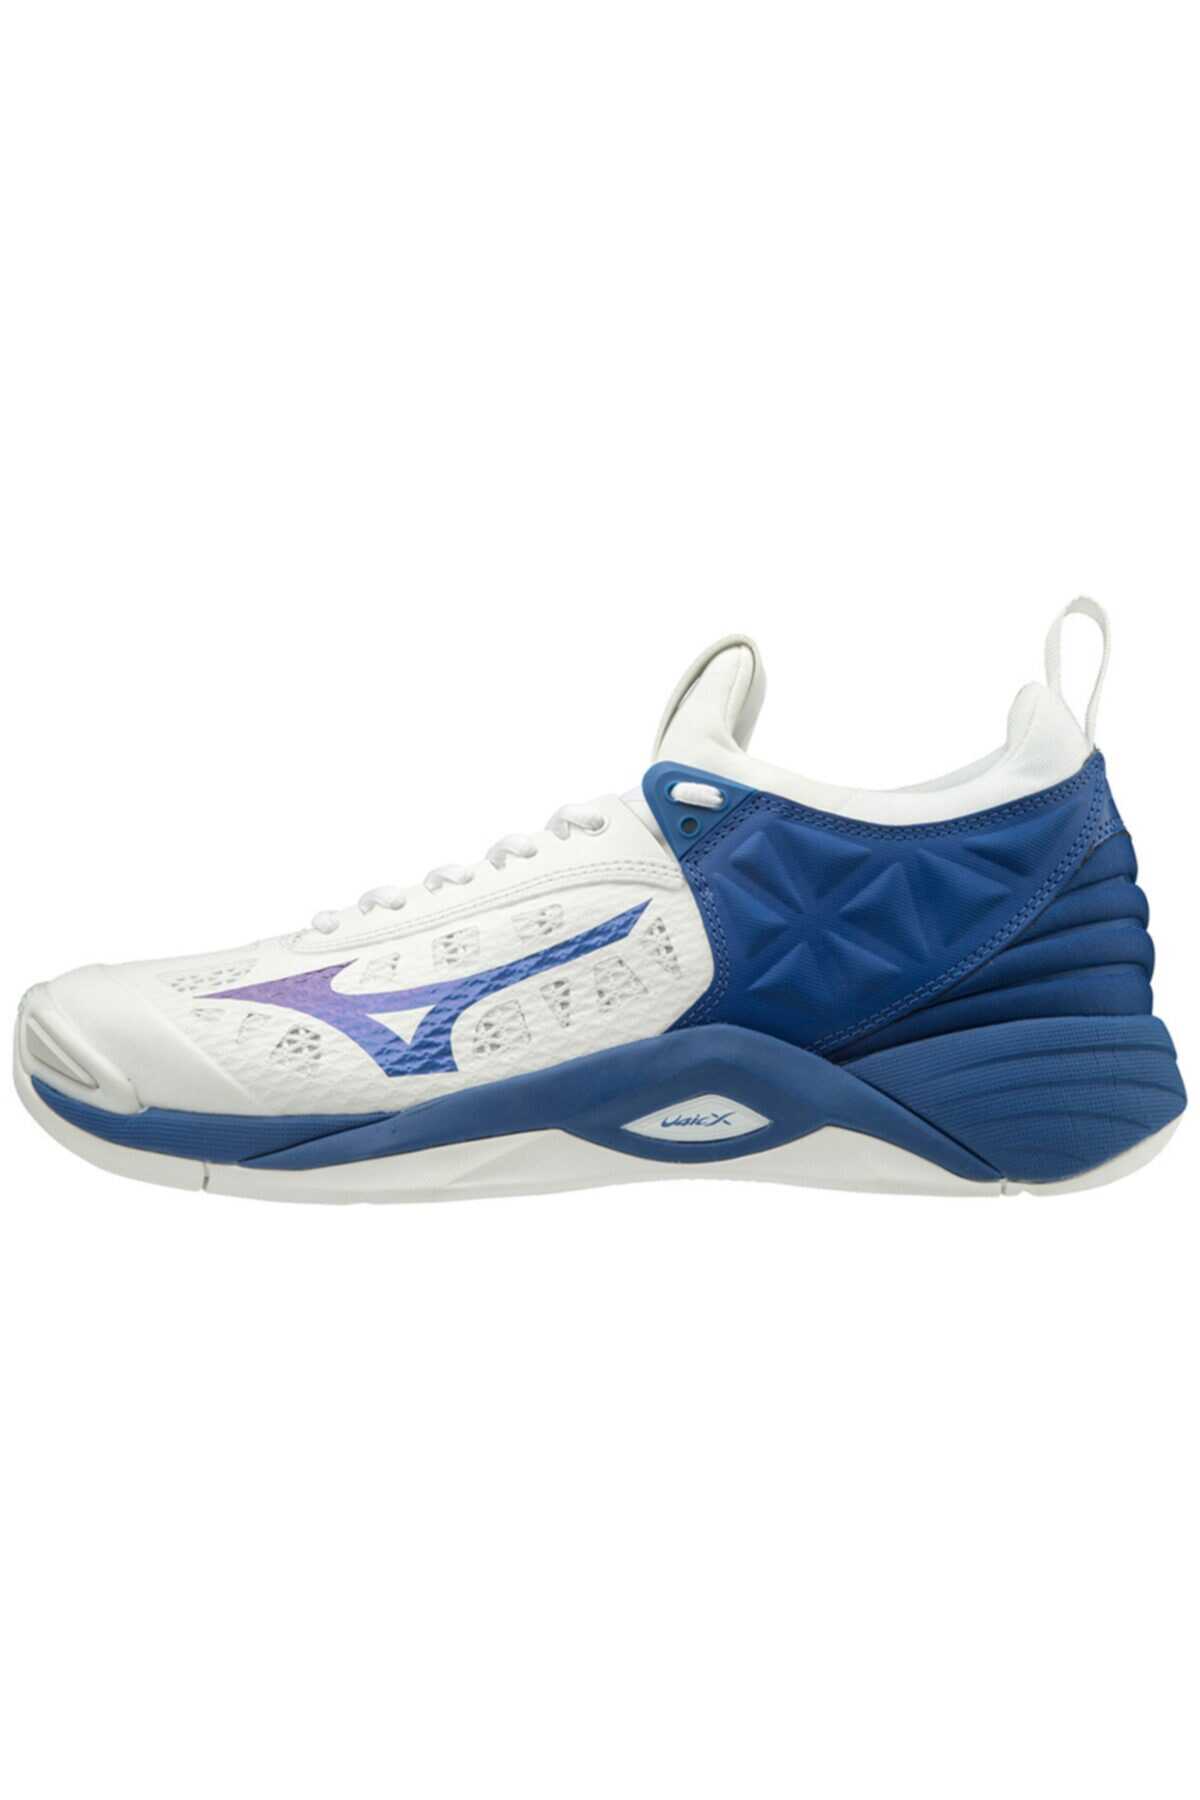 کفش والیبال مردانه دو رنگ سفید آبی مدل Wave Momentum برند MIZUNO 